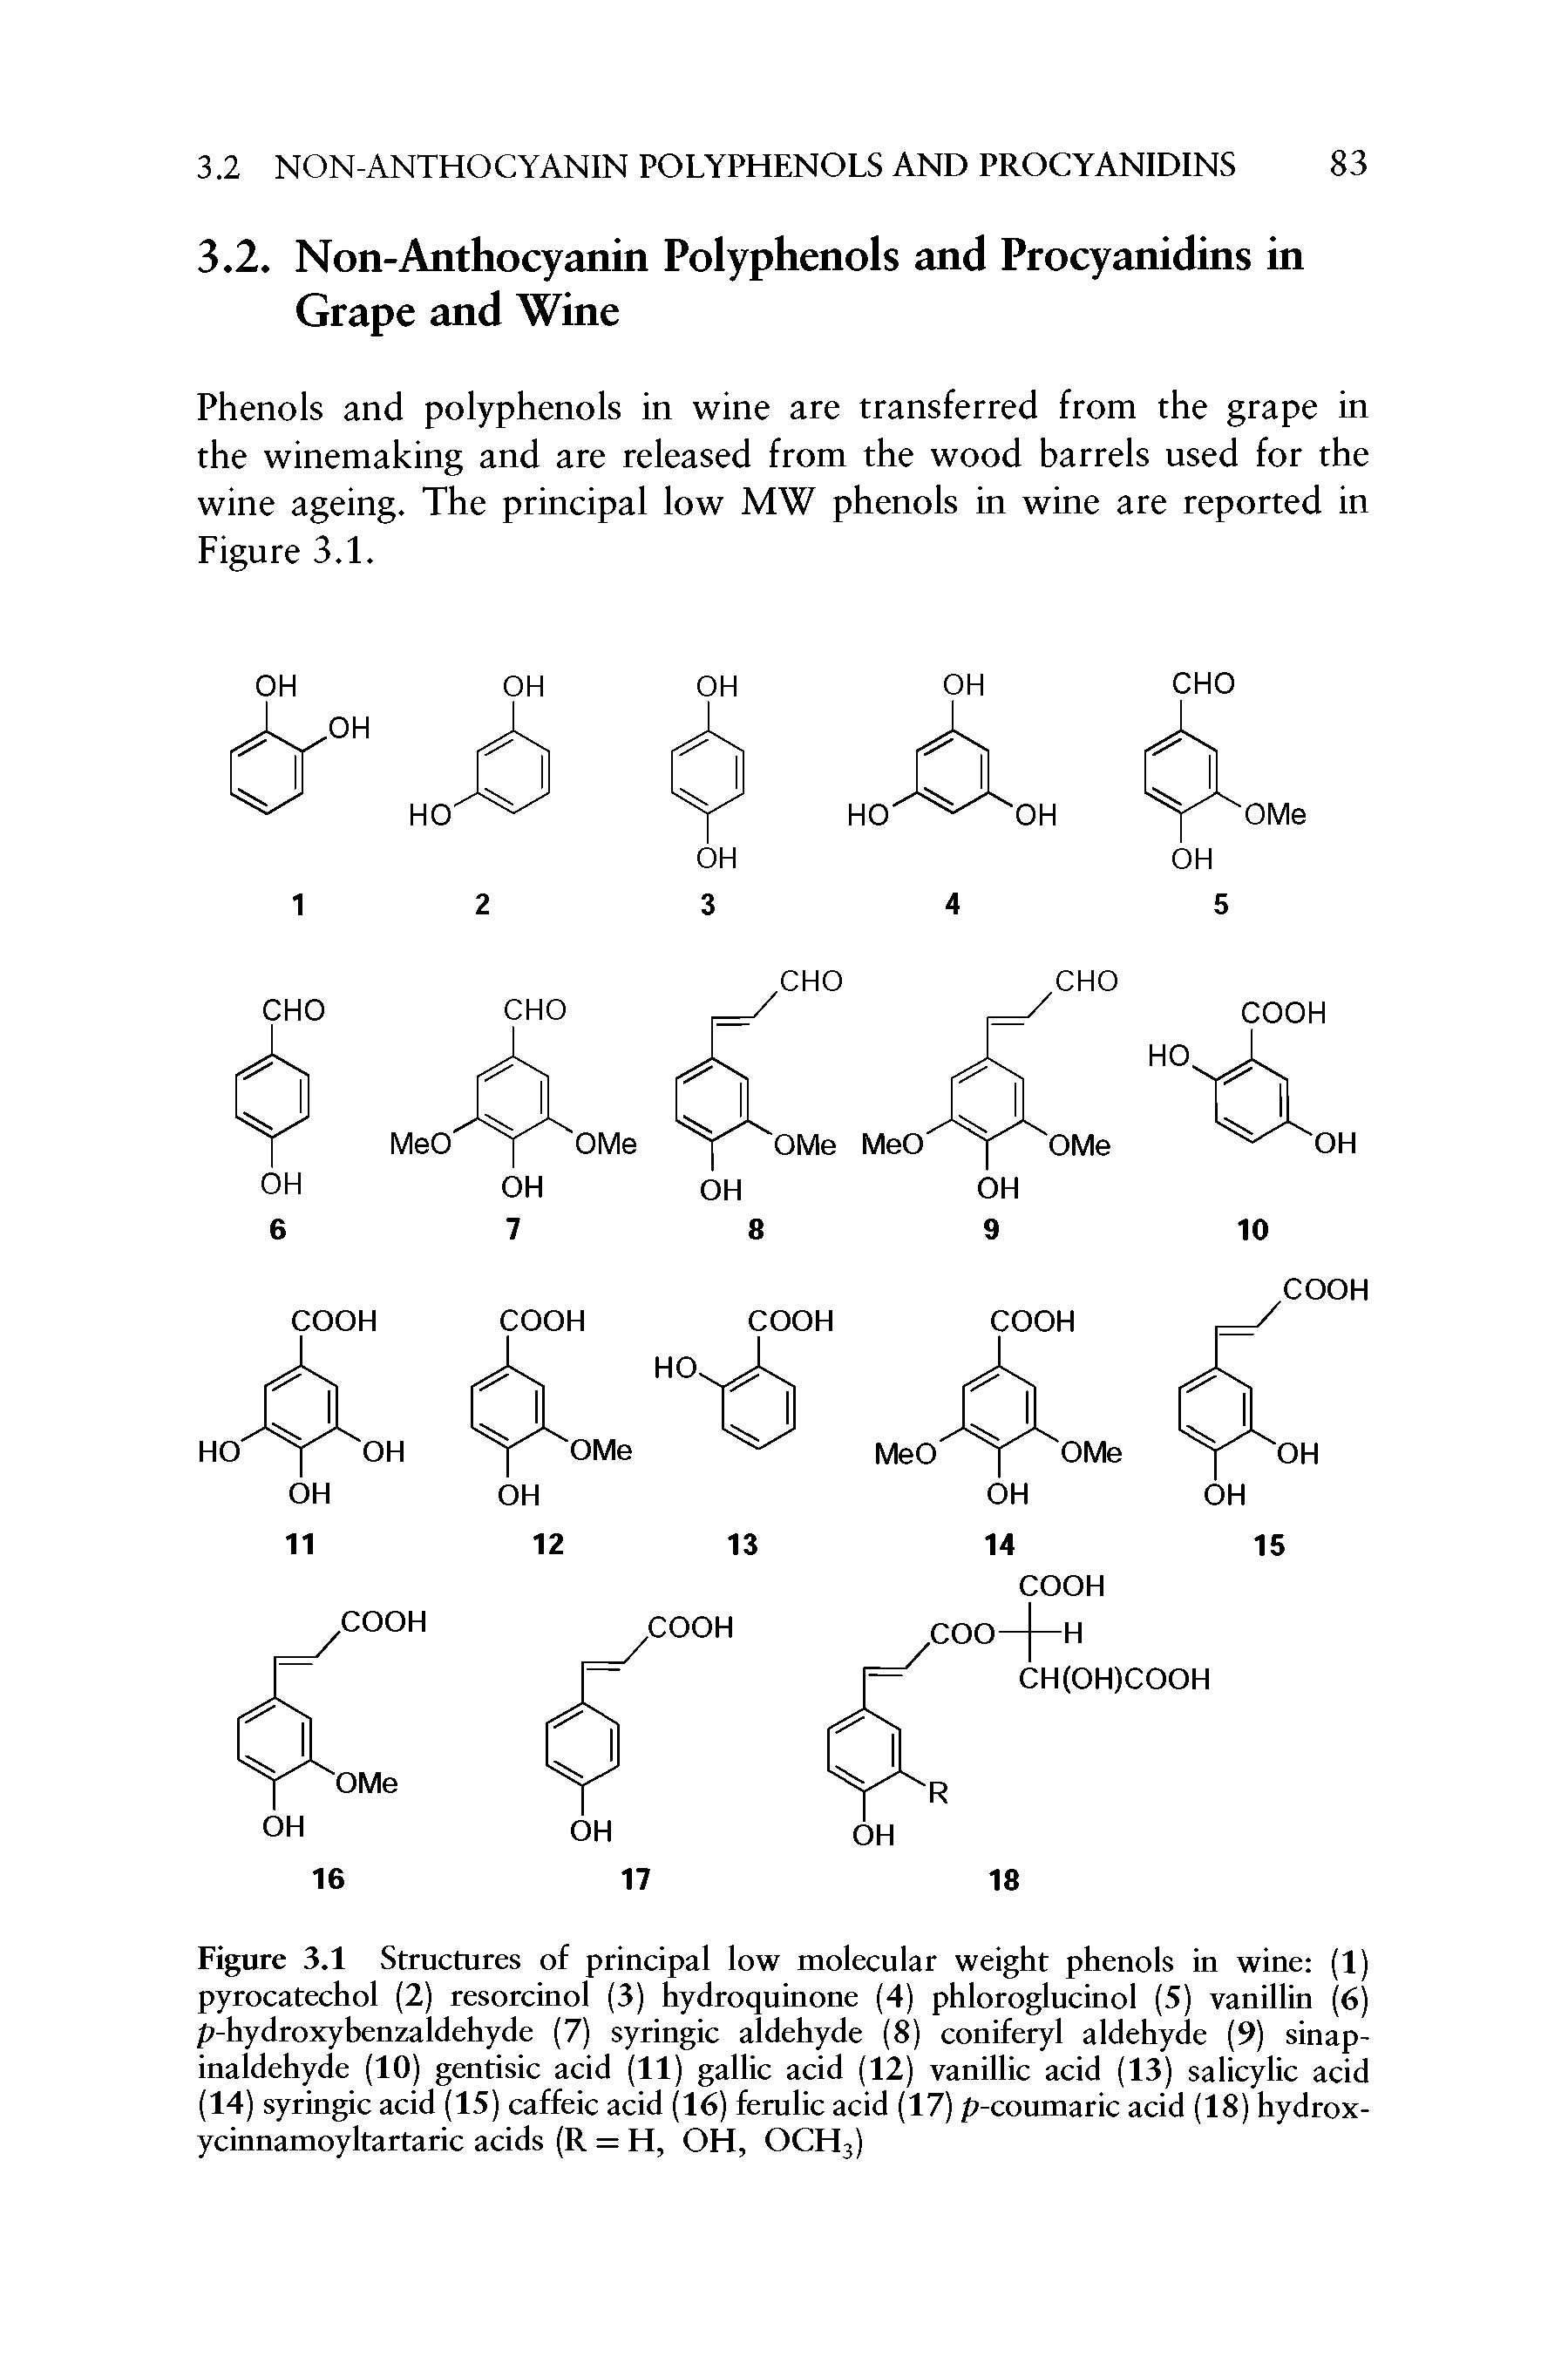 Figure 3.1 Structures of principal low molecular weight phenols in wine (1) pyrocatechol (2) resorcinol (3) hydroquinone (4) phloroglucinol (5) vanillin (6) p-hydroxybenzaldehyde (7) syringic aldehyde (8) coniferyl aldehyde (9) sinap-inaidehyde (10) gentisic acid (11) gallic acid (12) vanillic acid (13) salicylic acid (14) syringic acid (15) caffeic acid (16) ferulic acid (17) p-coumaric acid (18) hydrox-ycinnamoyltartaric acids (R = H, OH, OCH3)...